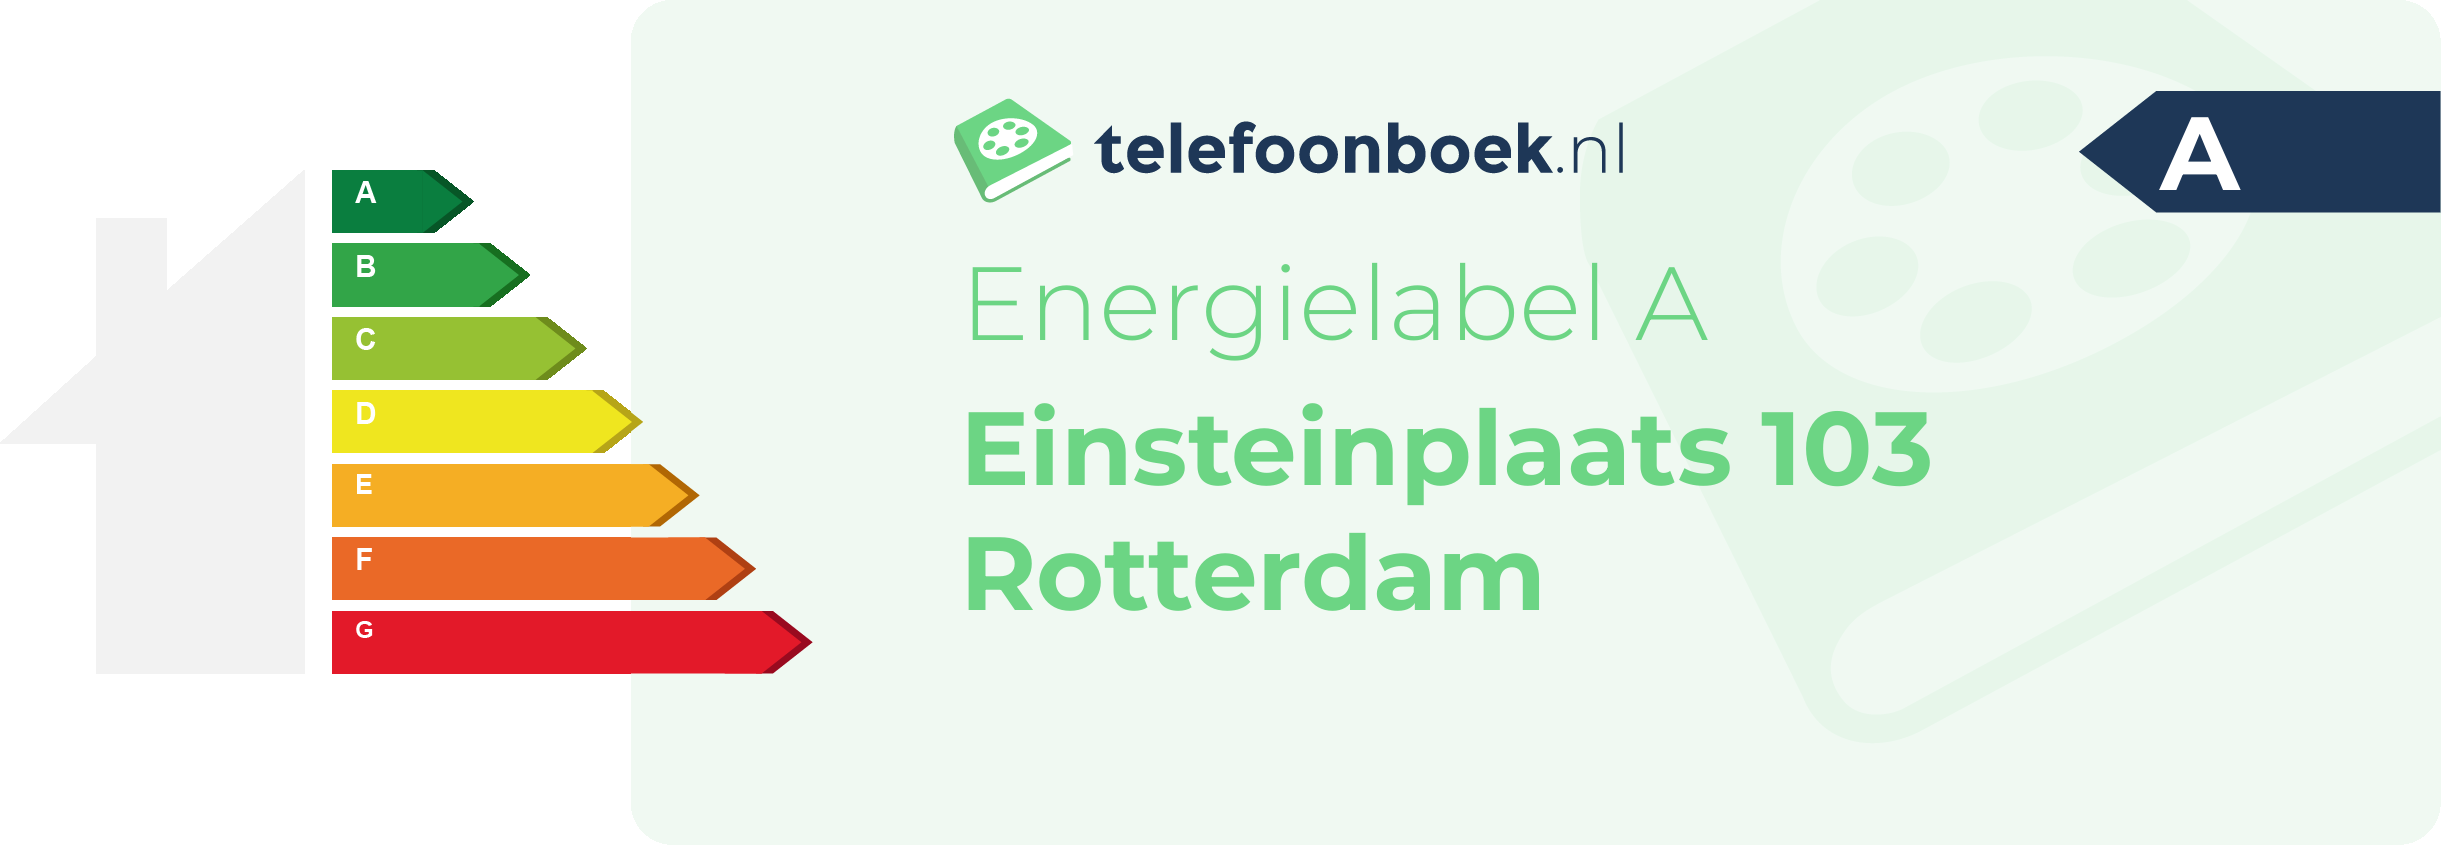 Energielabel Einsteinplaats 103 Rotterdam